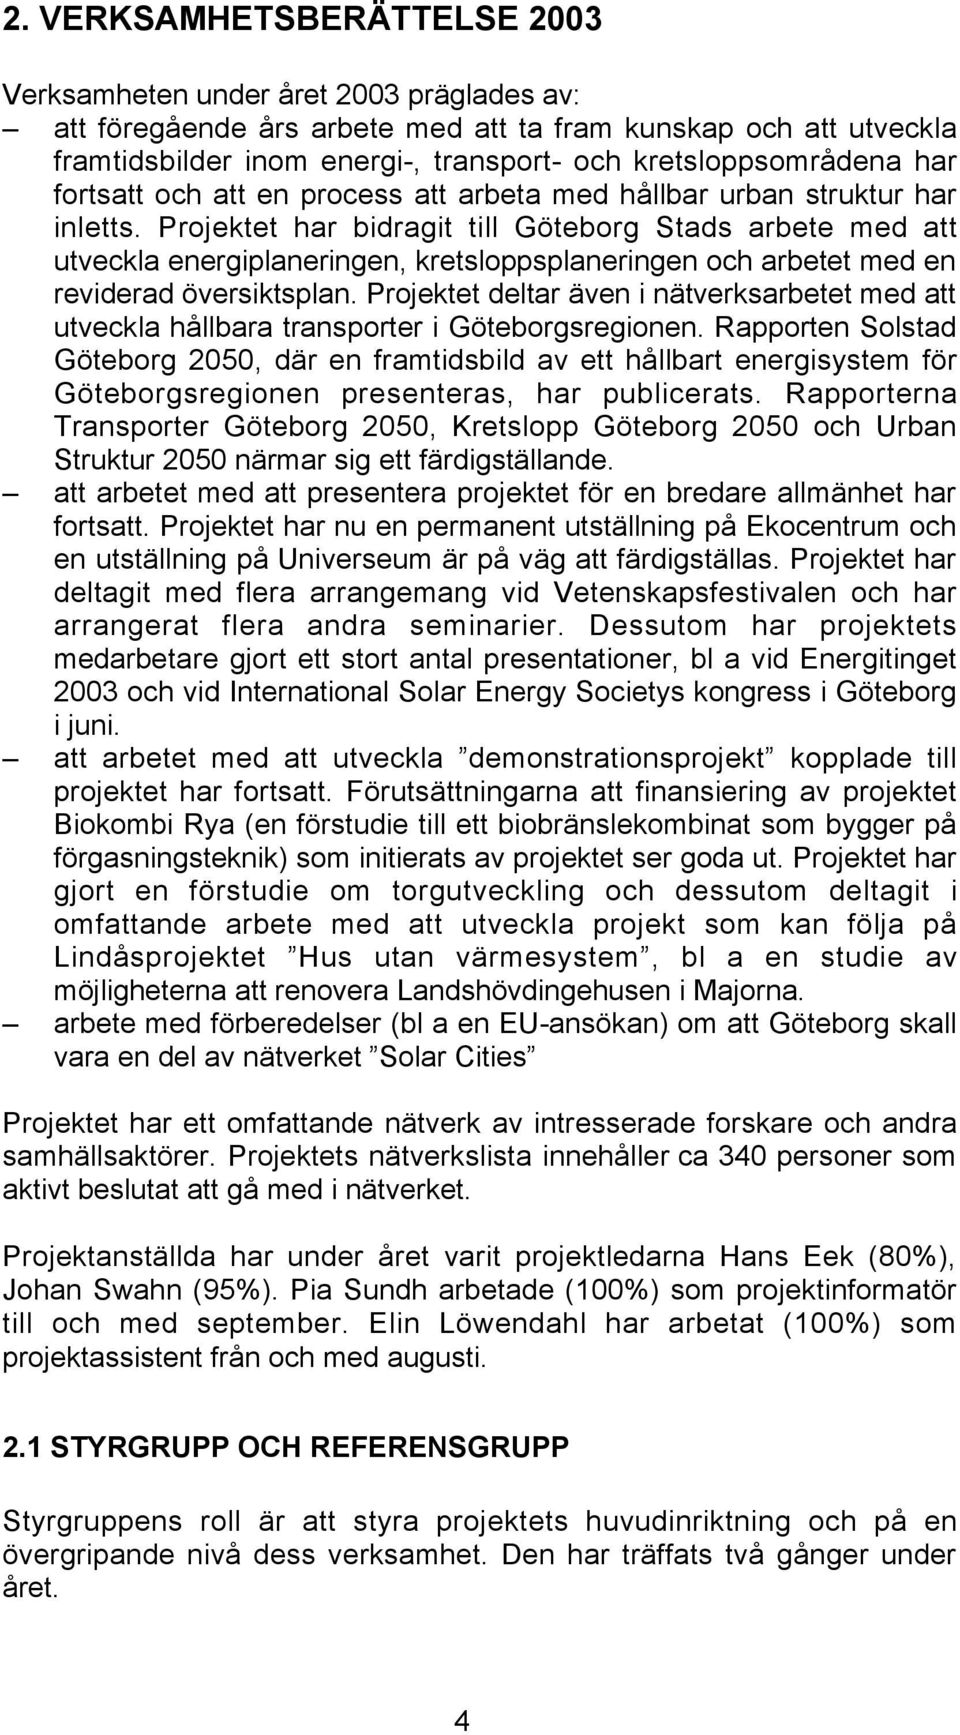 Projektet har bidragit till Göteborg Stads arbete med att utveckla energiplaneringen, kretsloppsplaneringen och arbetet med en reviderad översiktsplan.